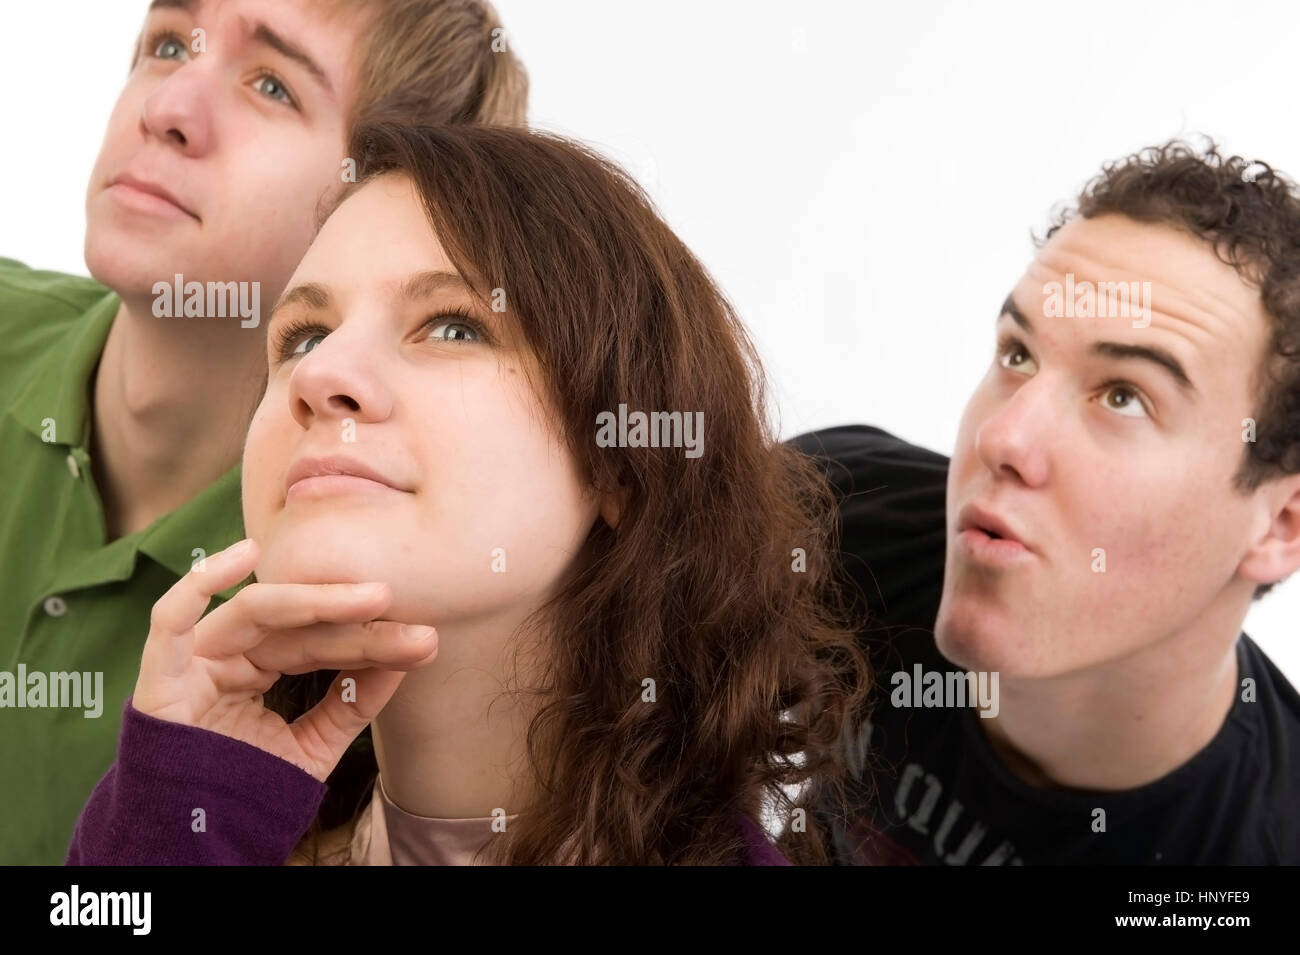 Model Release, Drei Jugendliche Im Porträt, Nachdenklich - drei Teenager im Porträt Stockfoto